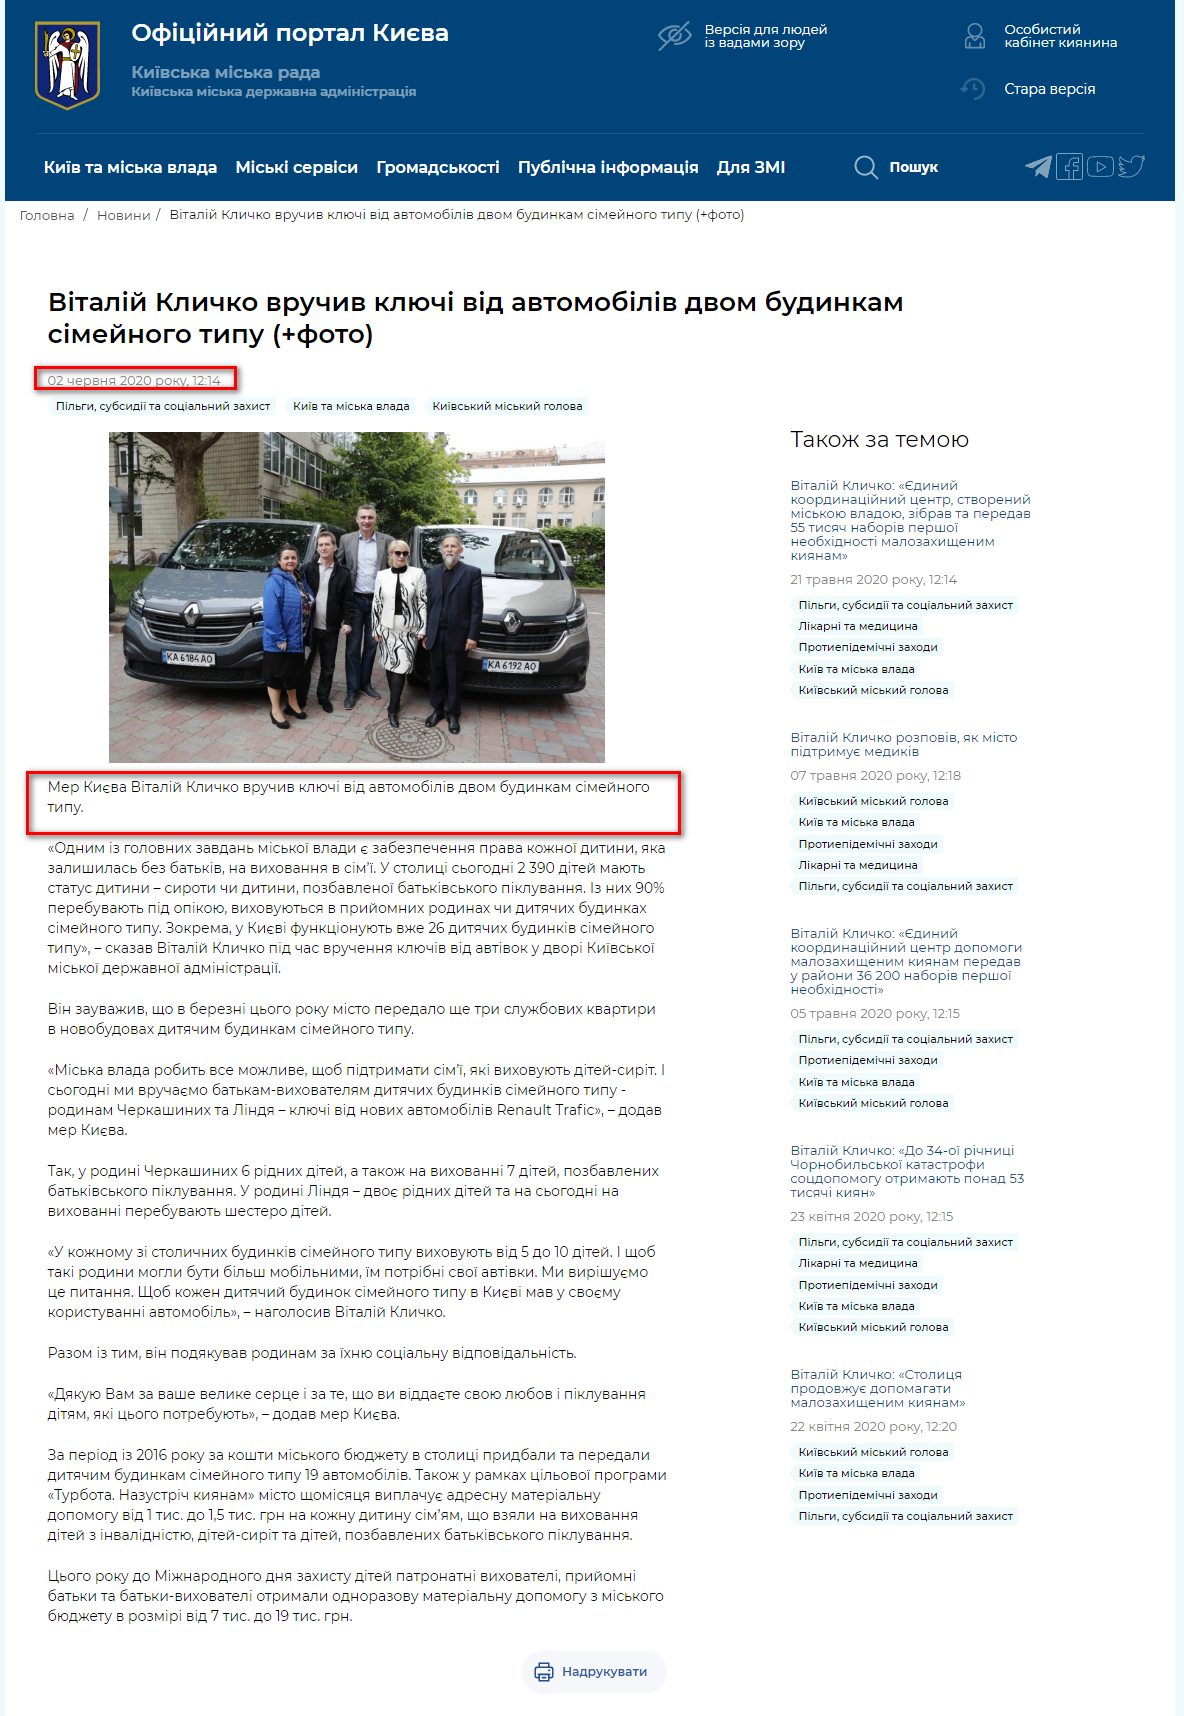 https://kyivcity.gov.ua/news/vitaliy_klichko_vruchiv_klyuchi_vid_avtomobiliv_dvom_budinkam_simeynogo_tipu/